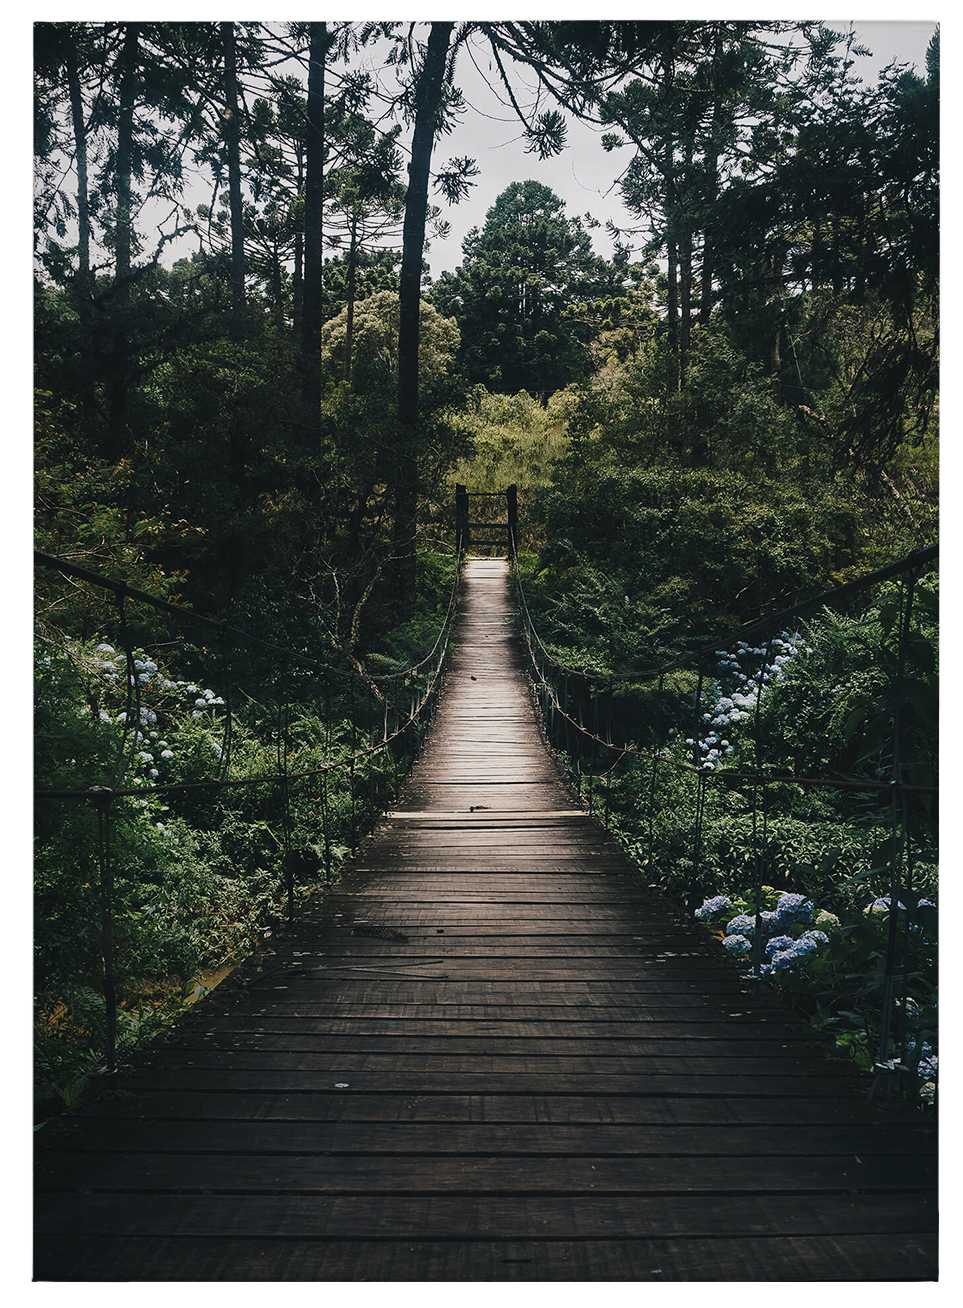             Cuadro Puente colgante en el bosque en verano - 0,50 m x 0,70 m
        